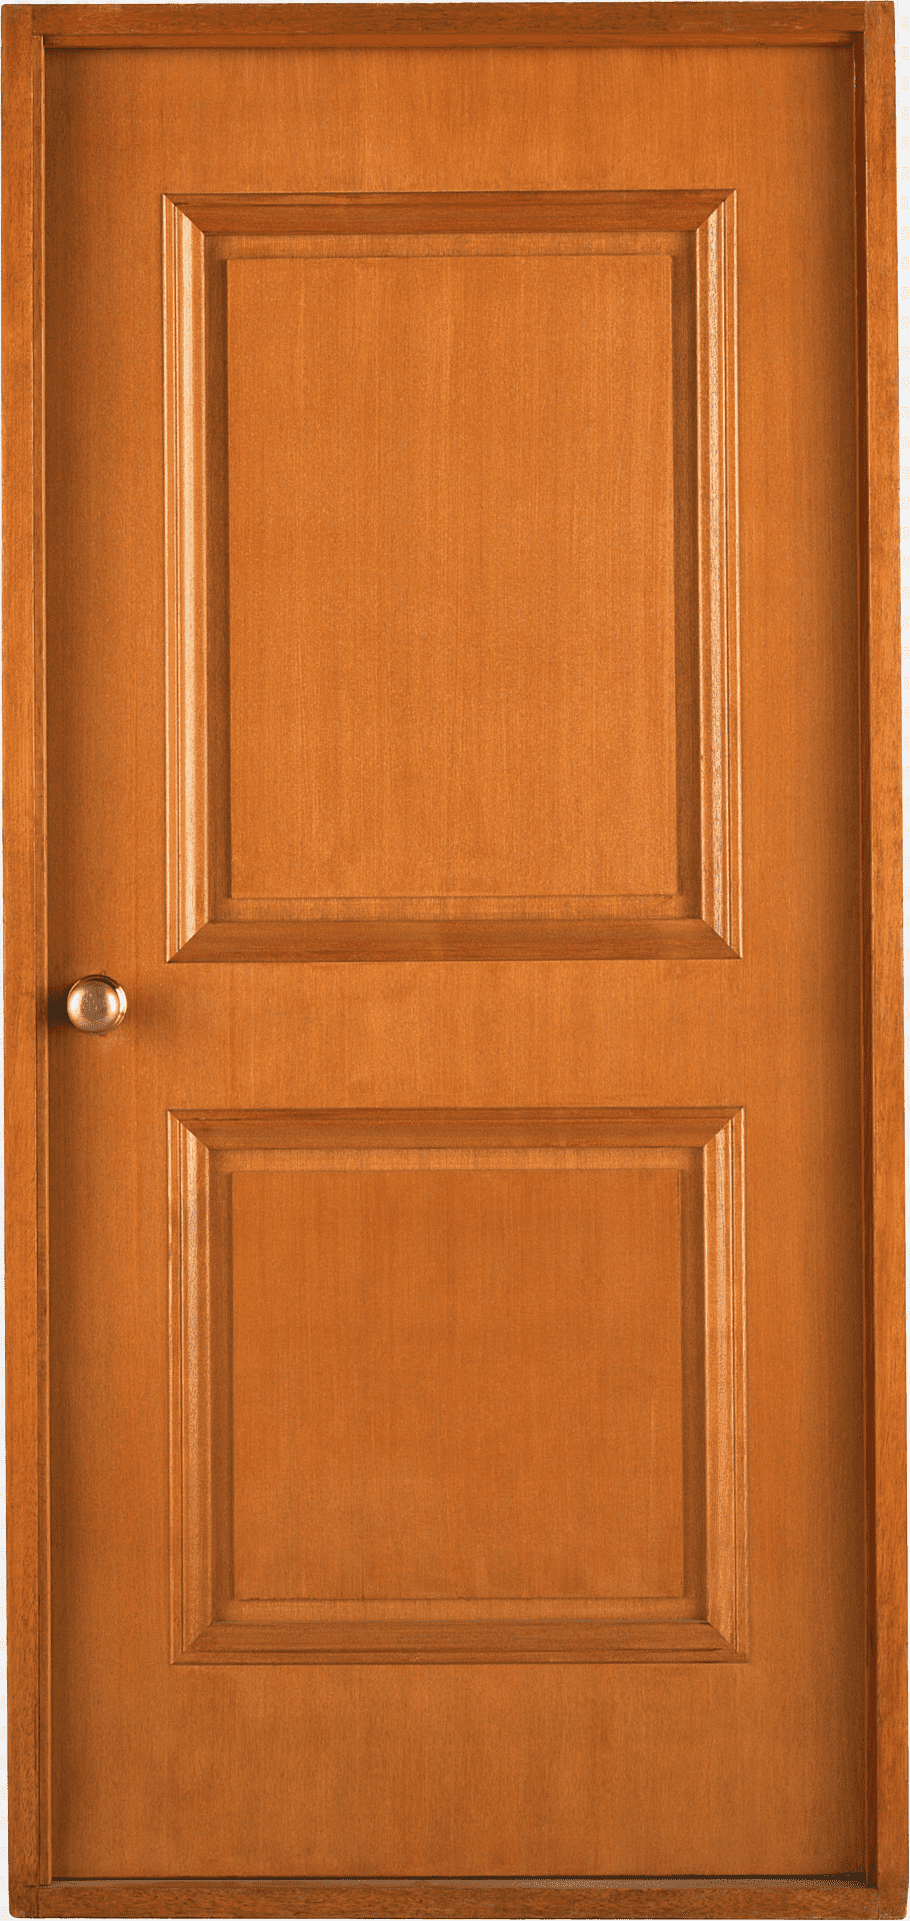 Wooden Door PNG Background Image